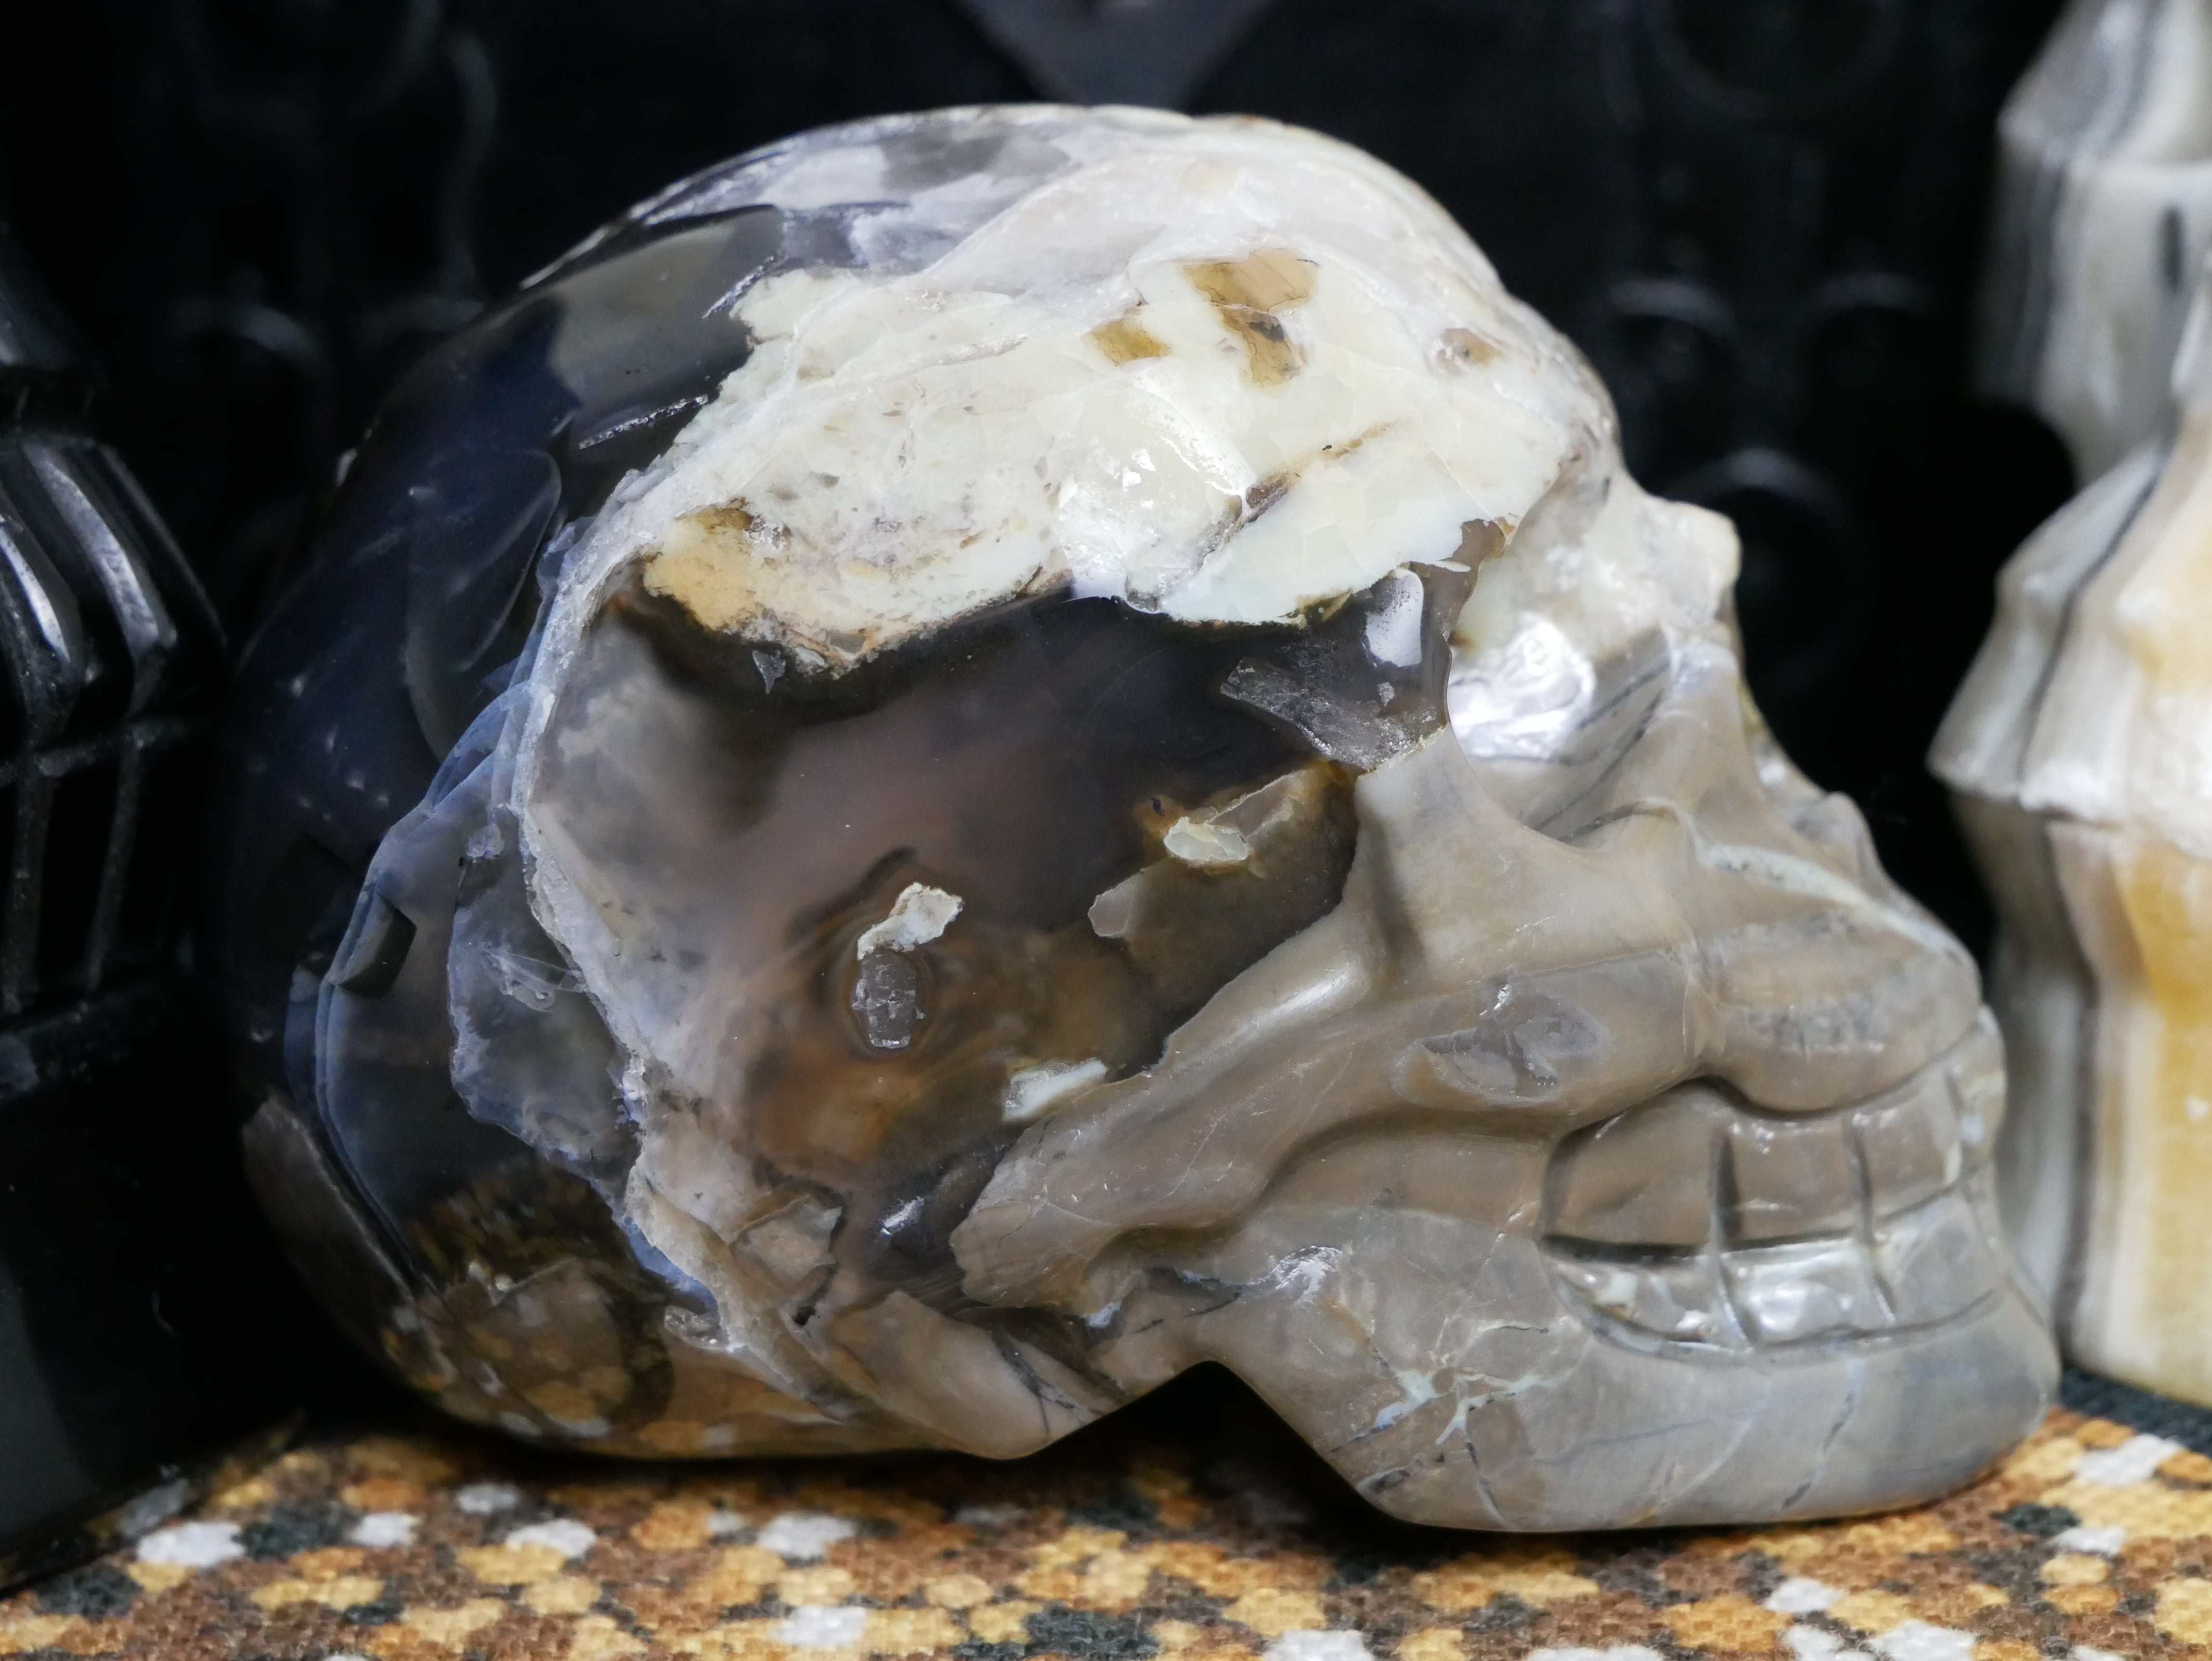 Volcano Agate Skull